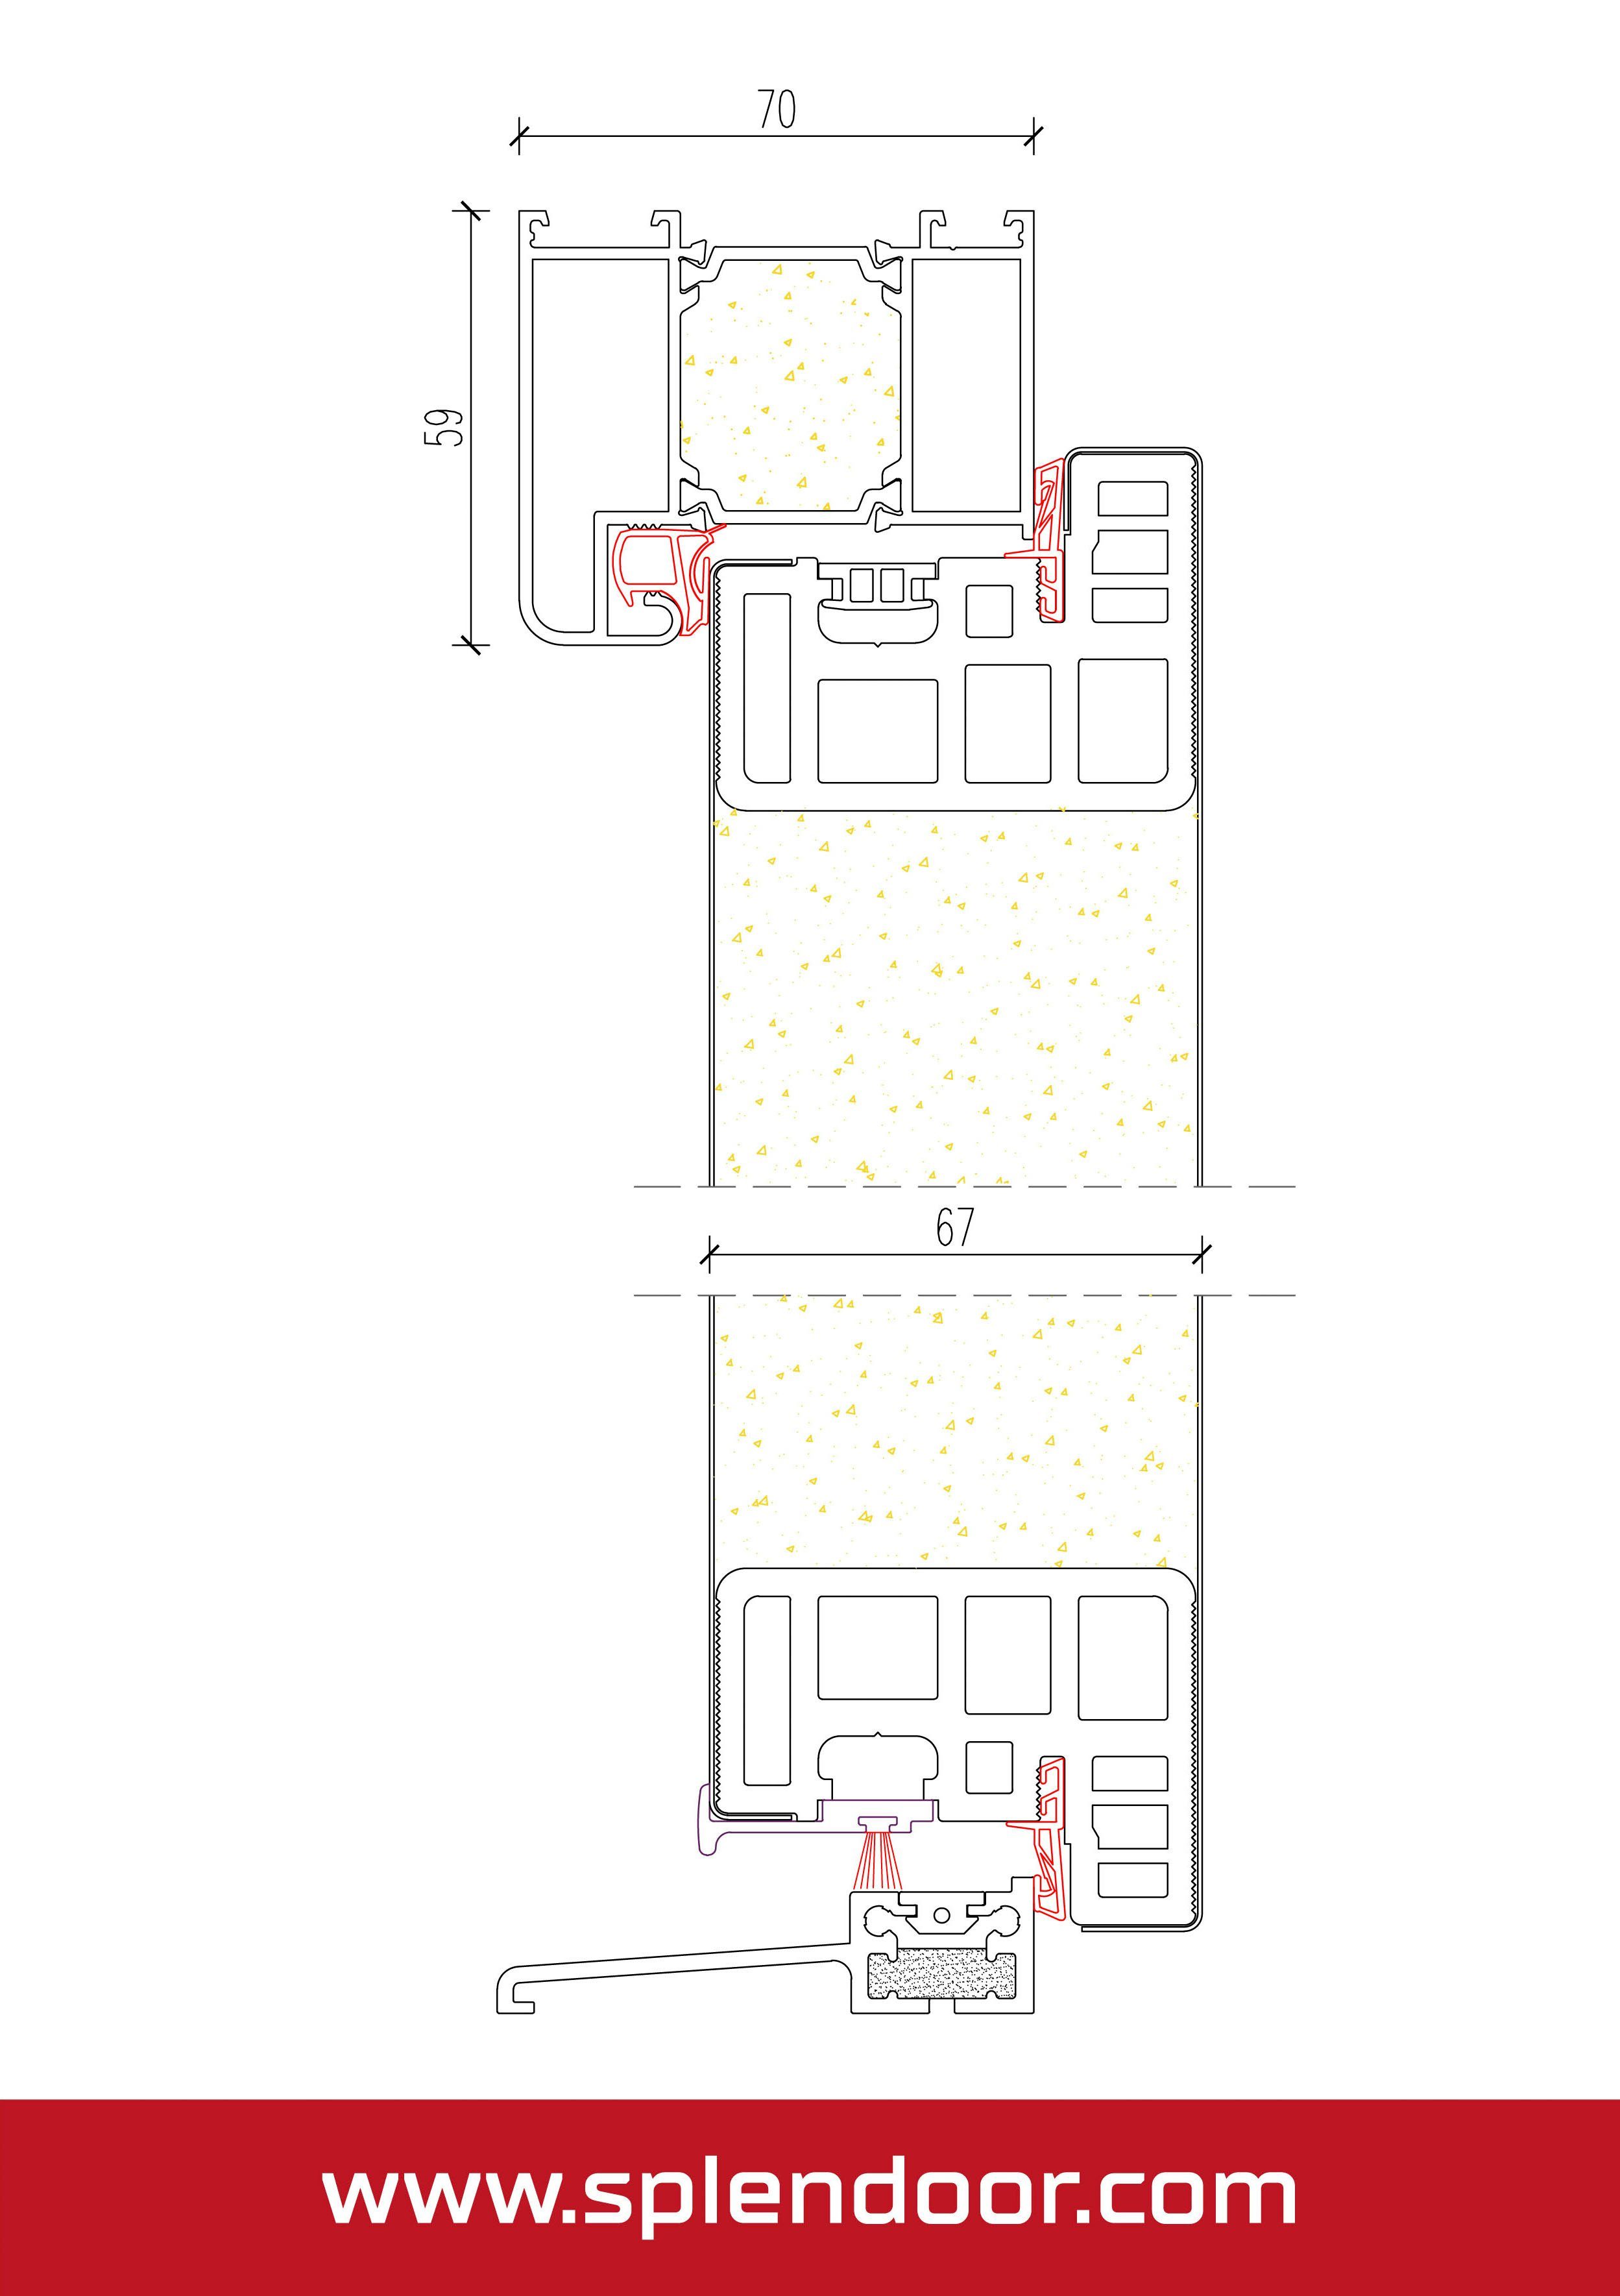 gut 3-fach und mit nussbaum ZADAR wärmegedämmt SplenDoor mit Türrahmen Prime Haustür sehr Stabil, Verglasung, (Set),